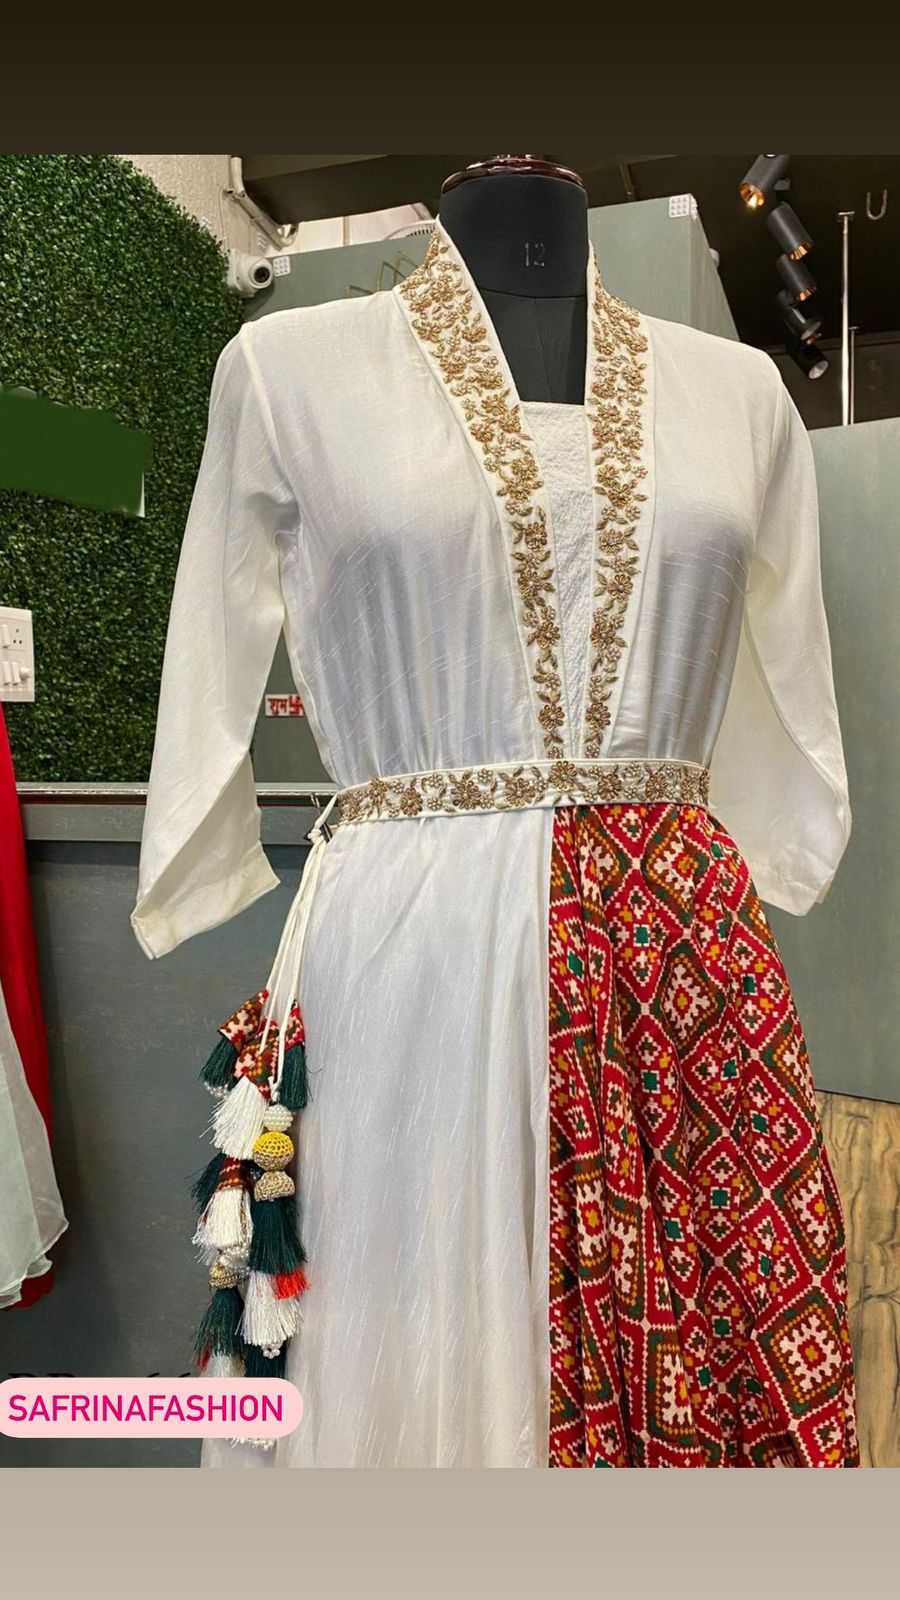 Susan designer indowestern dress